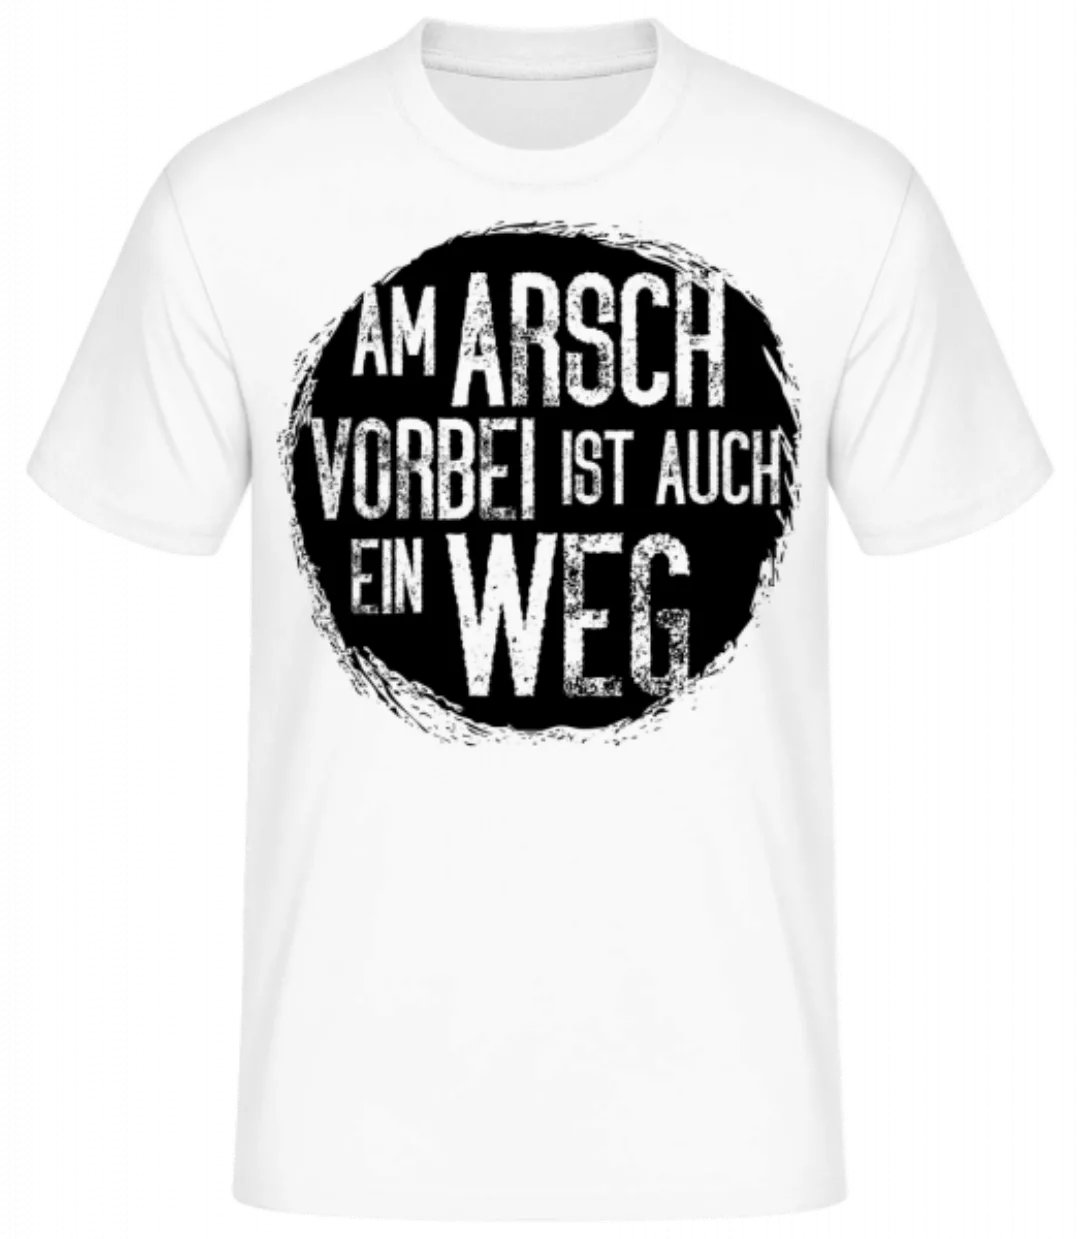 Am Arsch Vorbei Weg · Männer Basic T-Shirt günstig online kaufen